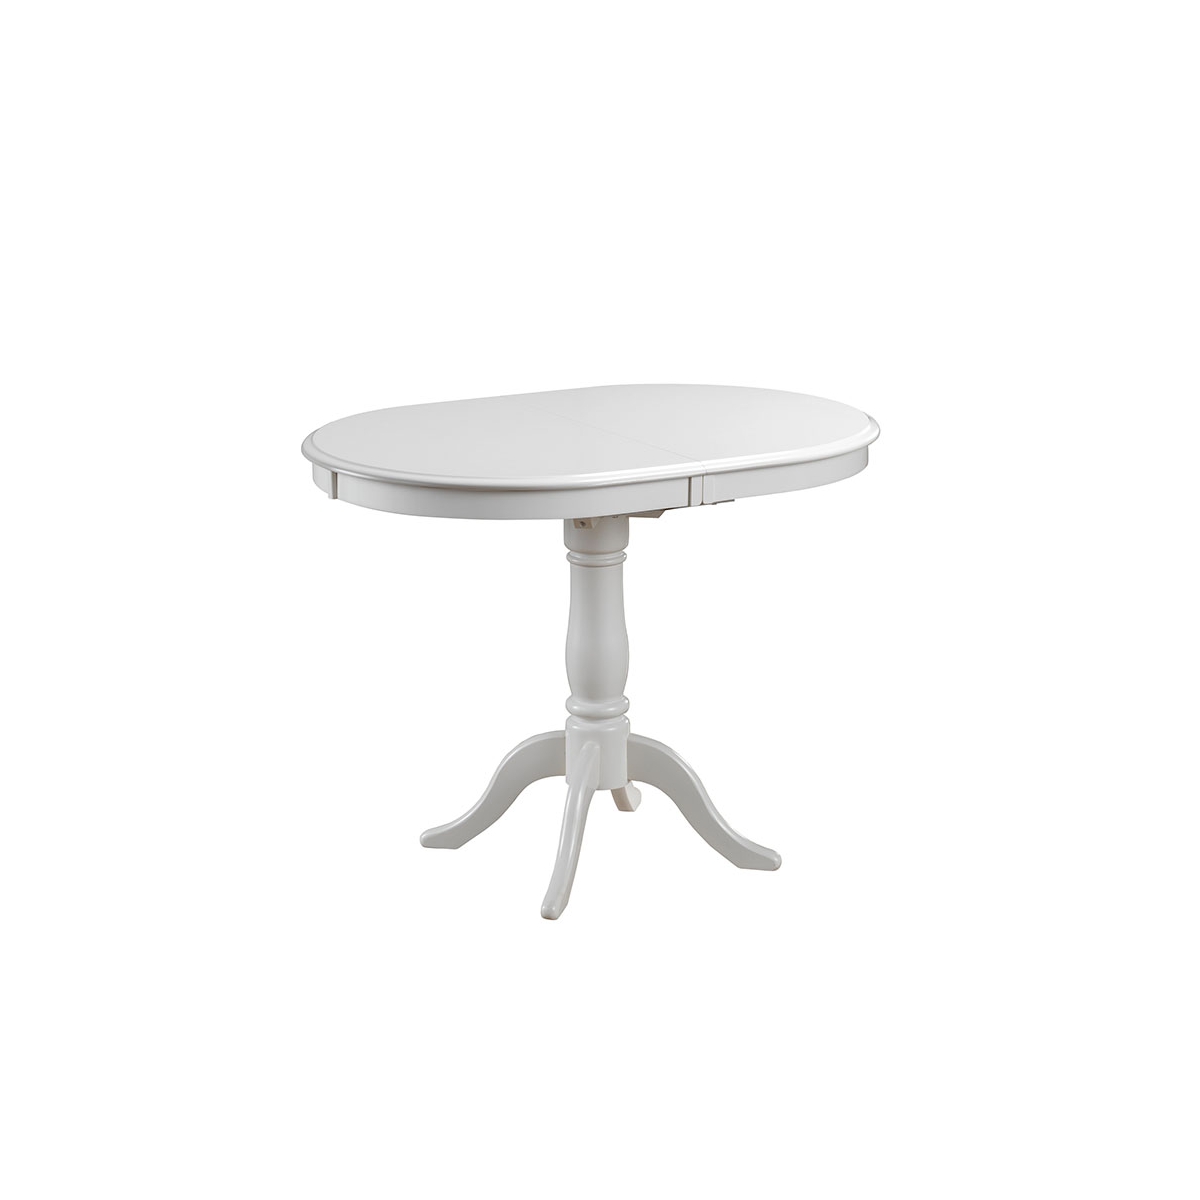 стол круглый белый 80 см для кухни